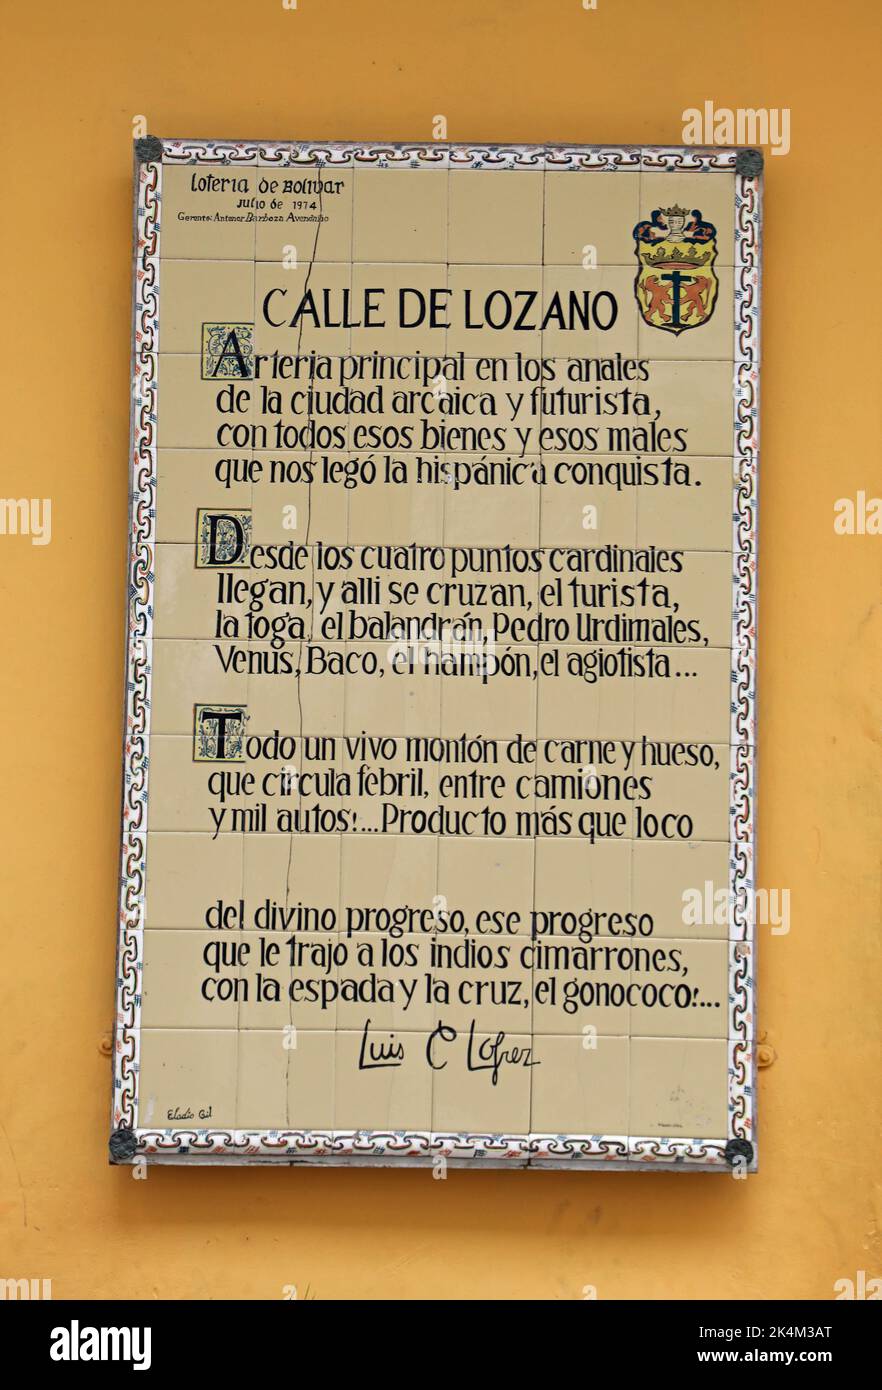 Poem by Luis Carlos Lopez in Cartagena Stock Photo